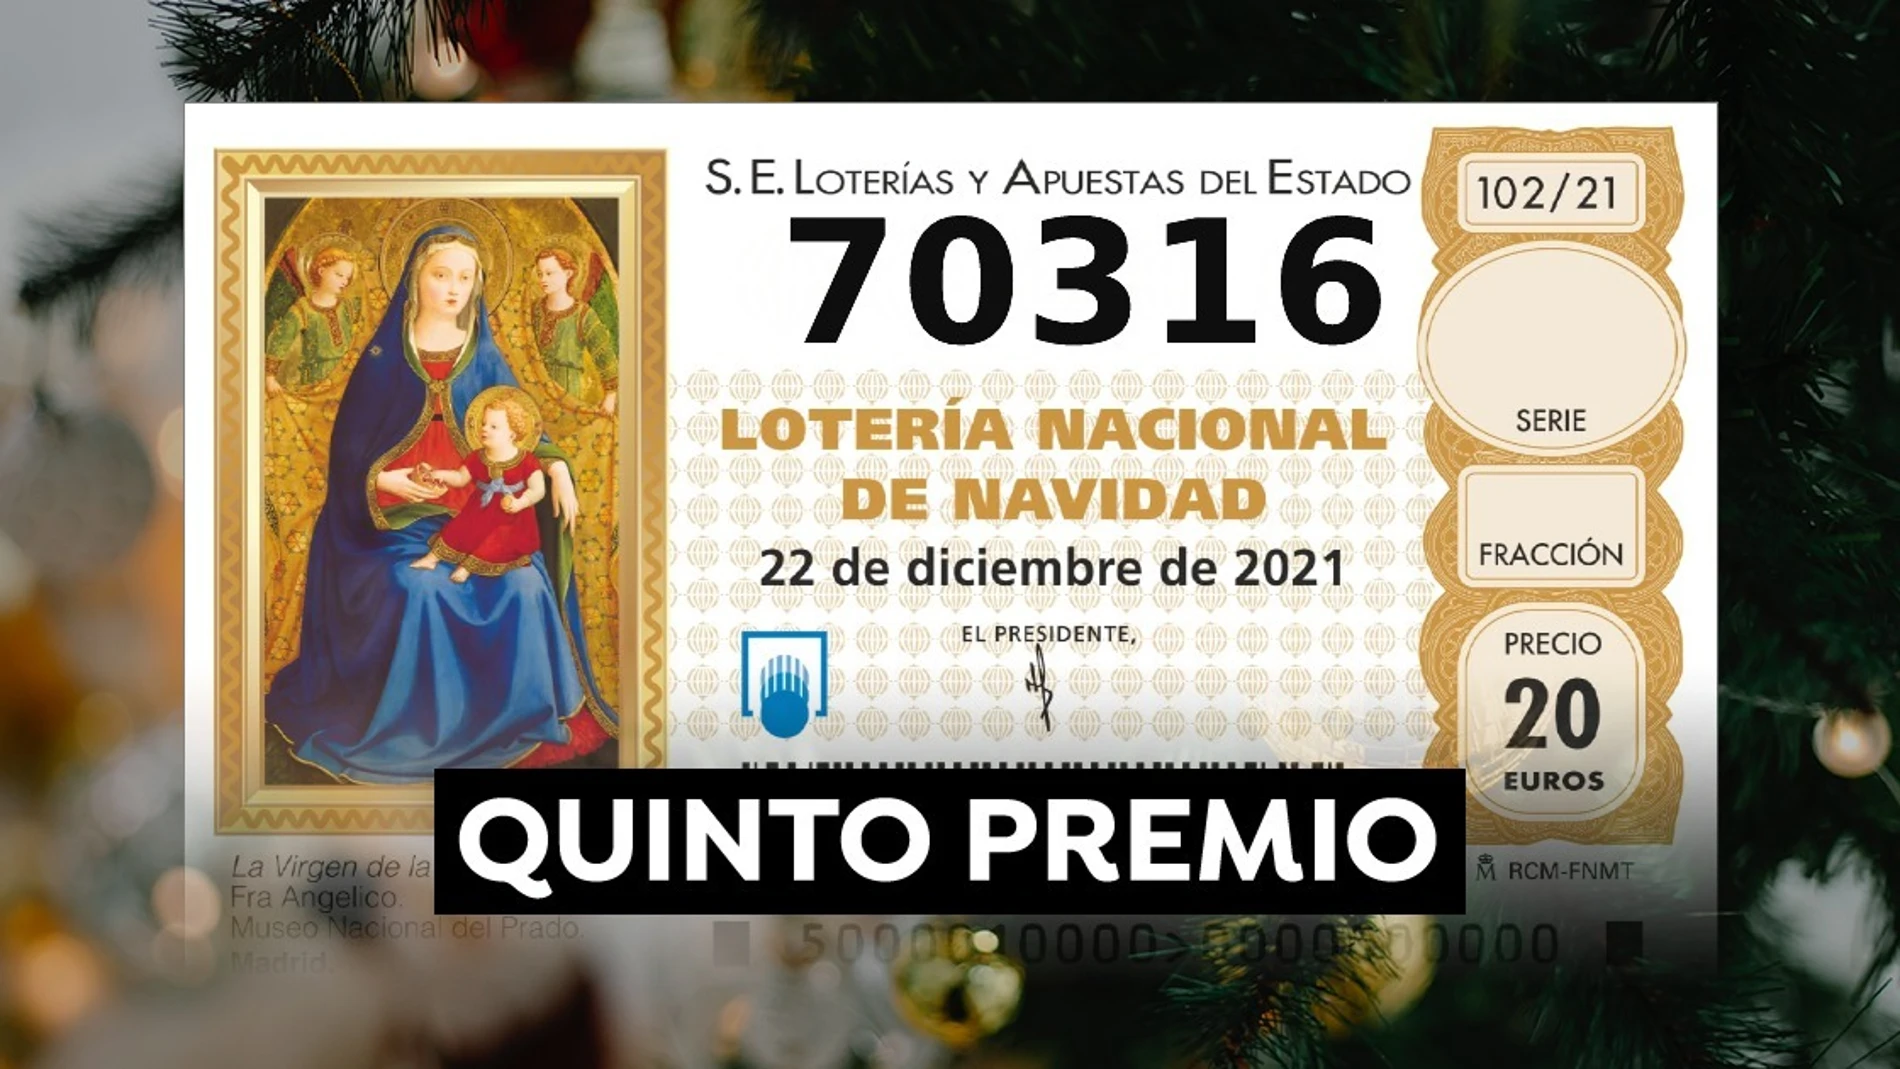 70.316, segundo quinto premio de la Lotería de Navidad 2021